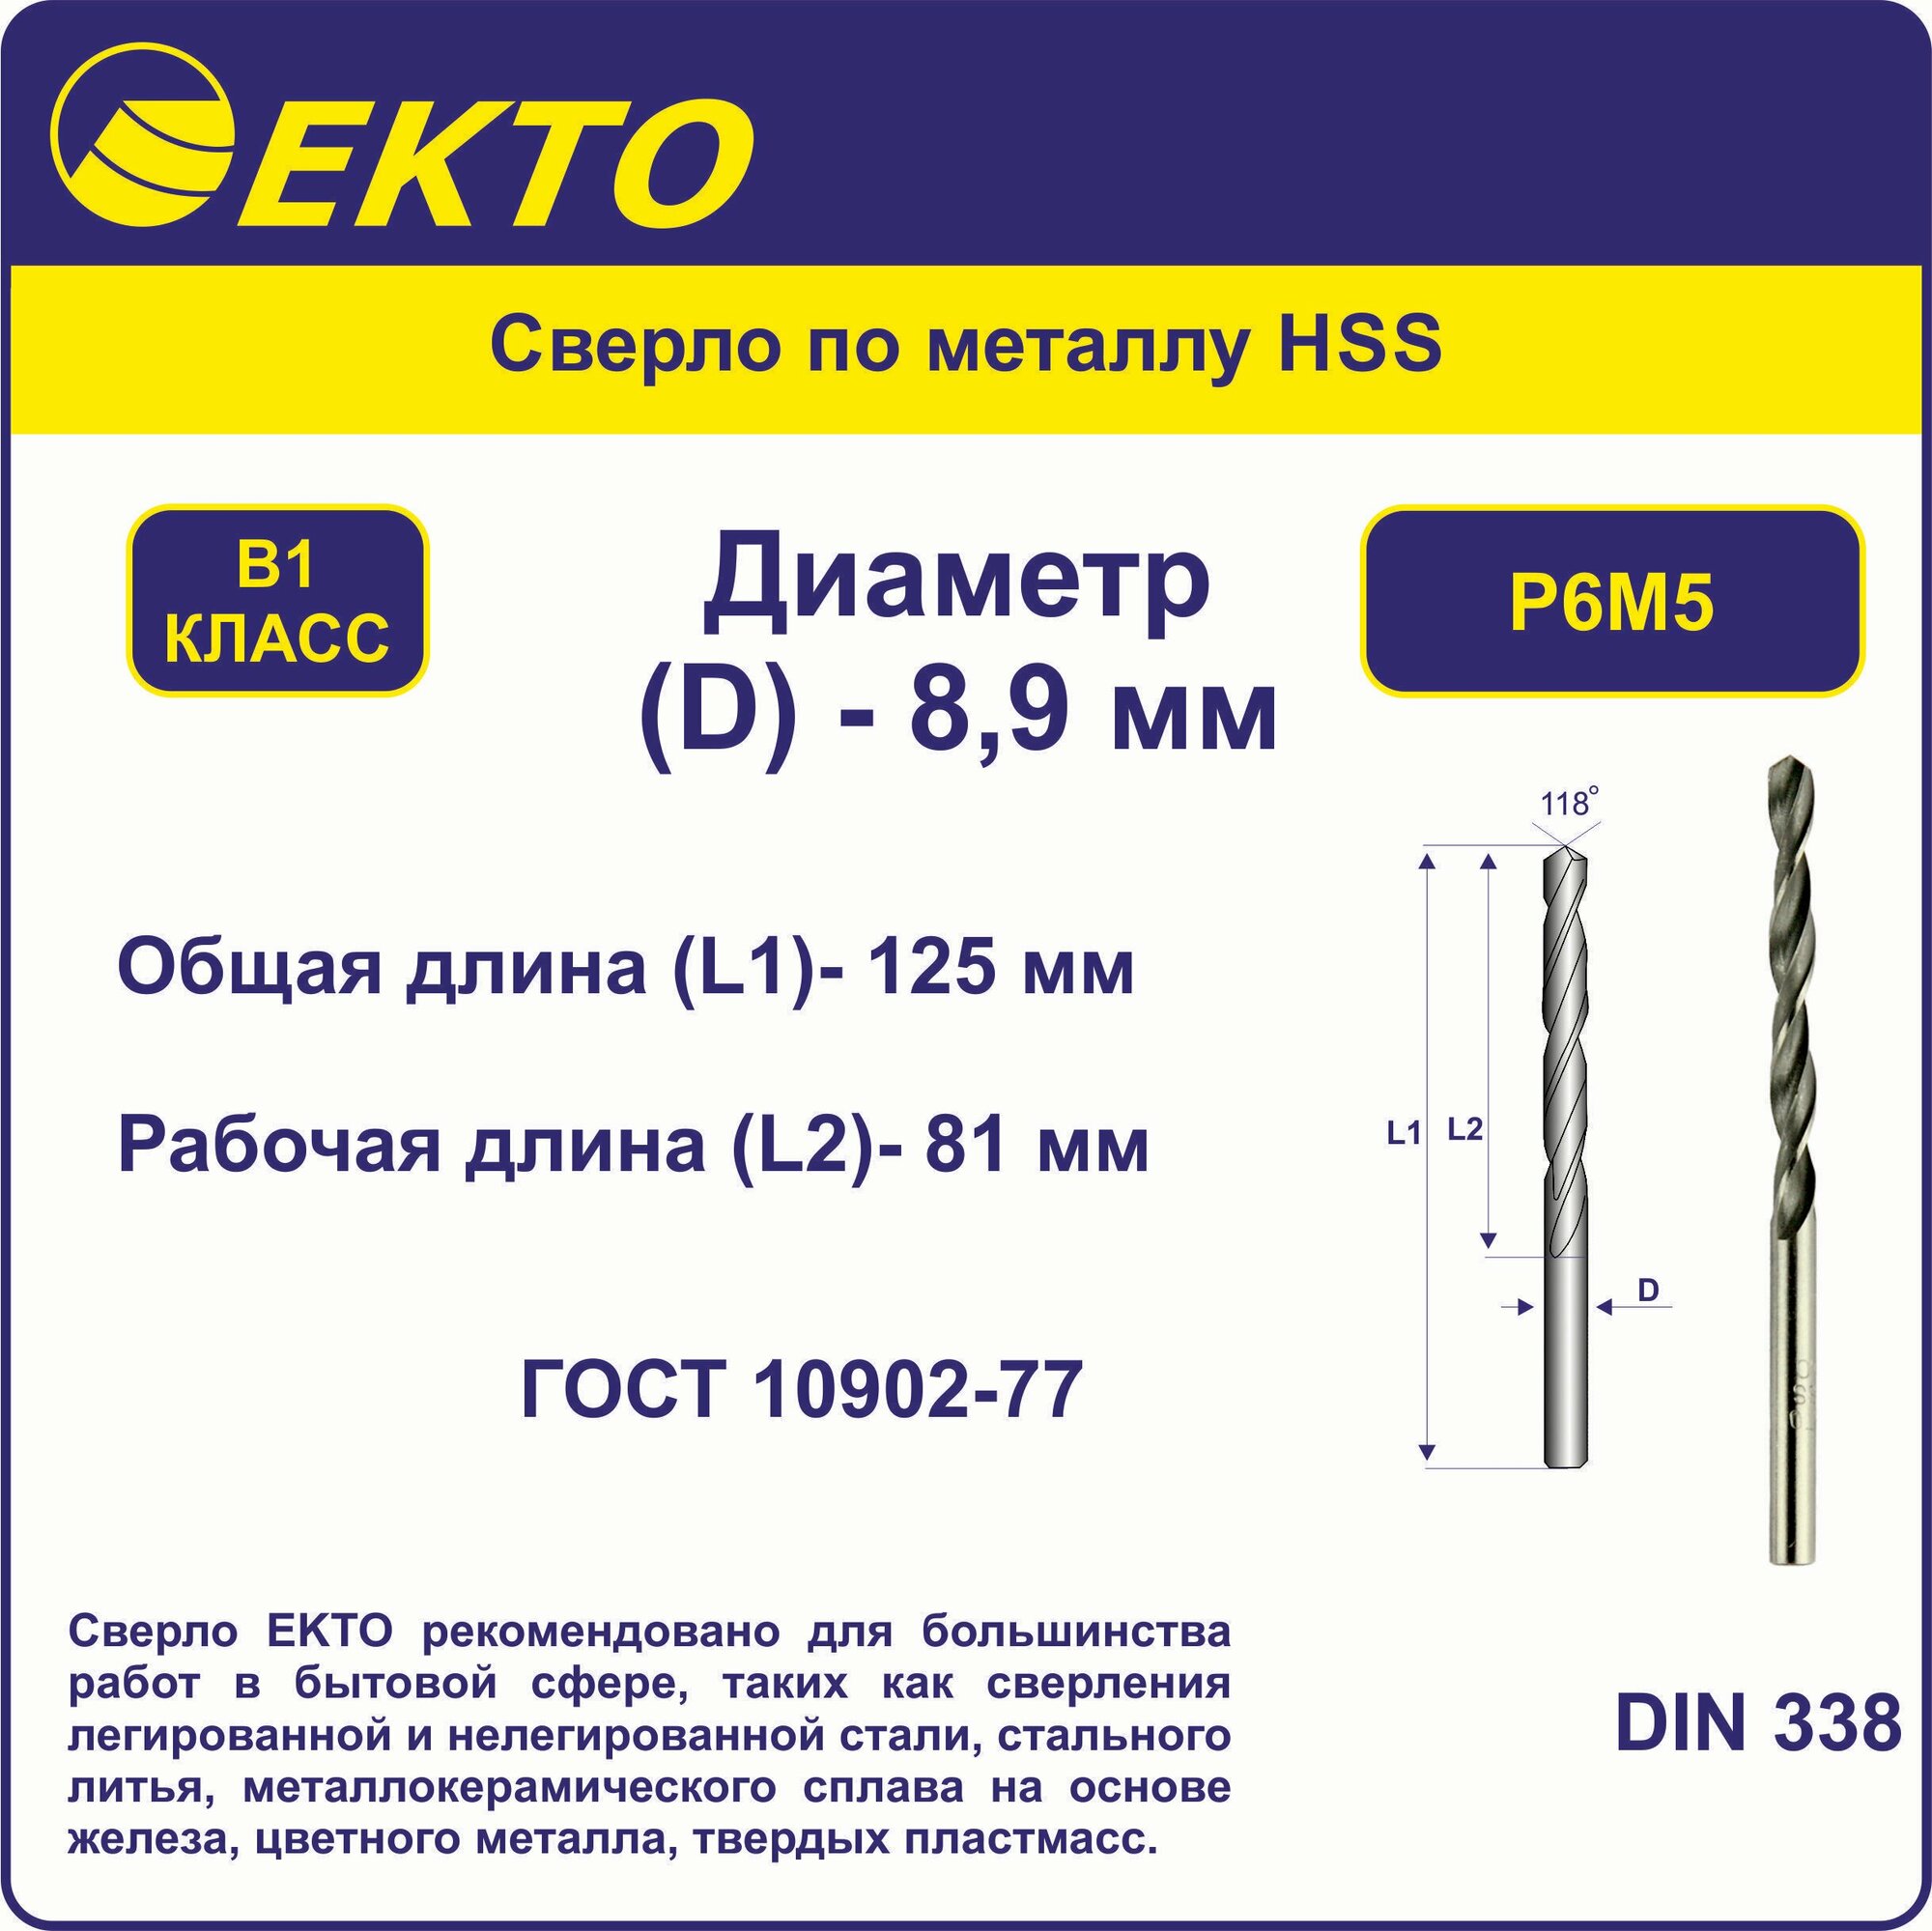 Сверло по металлу HSS 89 мм цилиндрический хвостовик EKTO